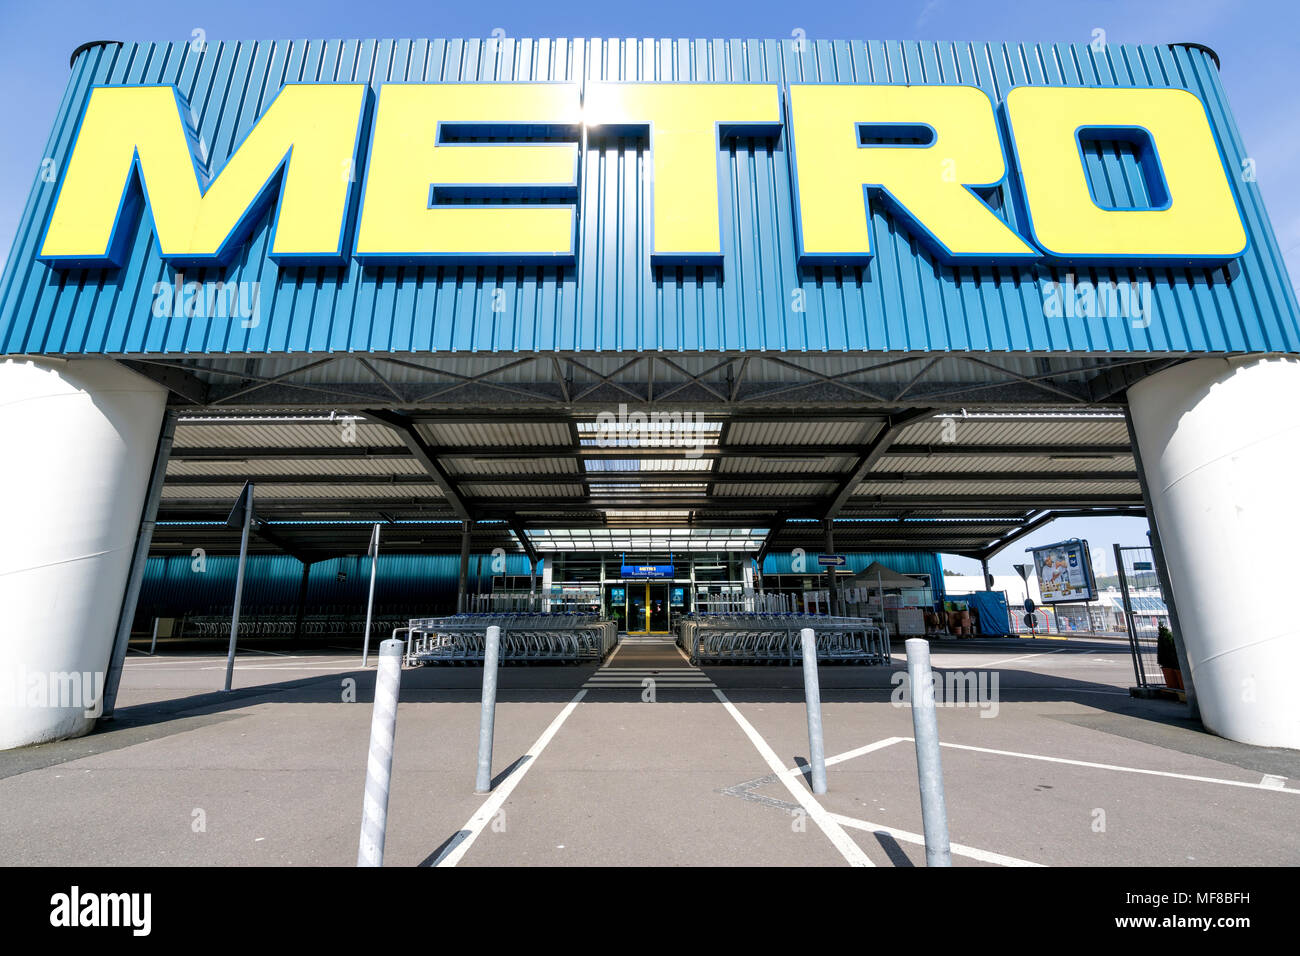 Eingang eines Metro Cash & Carry Markt. Metro Cash & Carry ist der größte Umsatz Aufteilung des deutschen Handels- und Einzelhandelskette Metro AG. Stockfoto